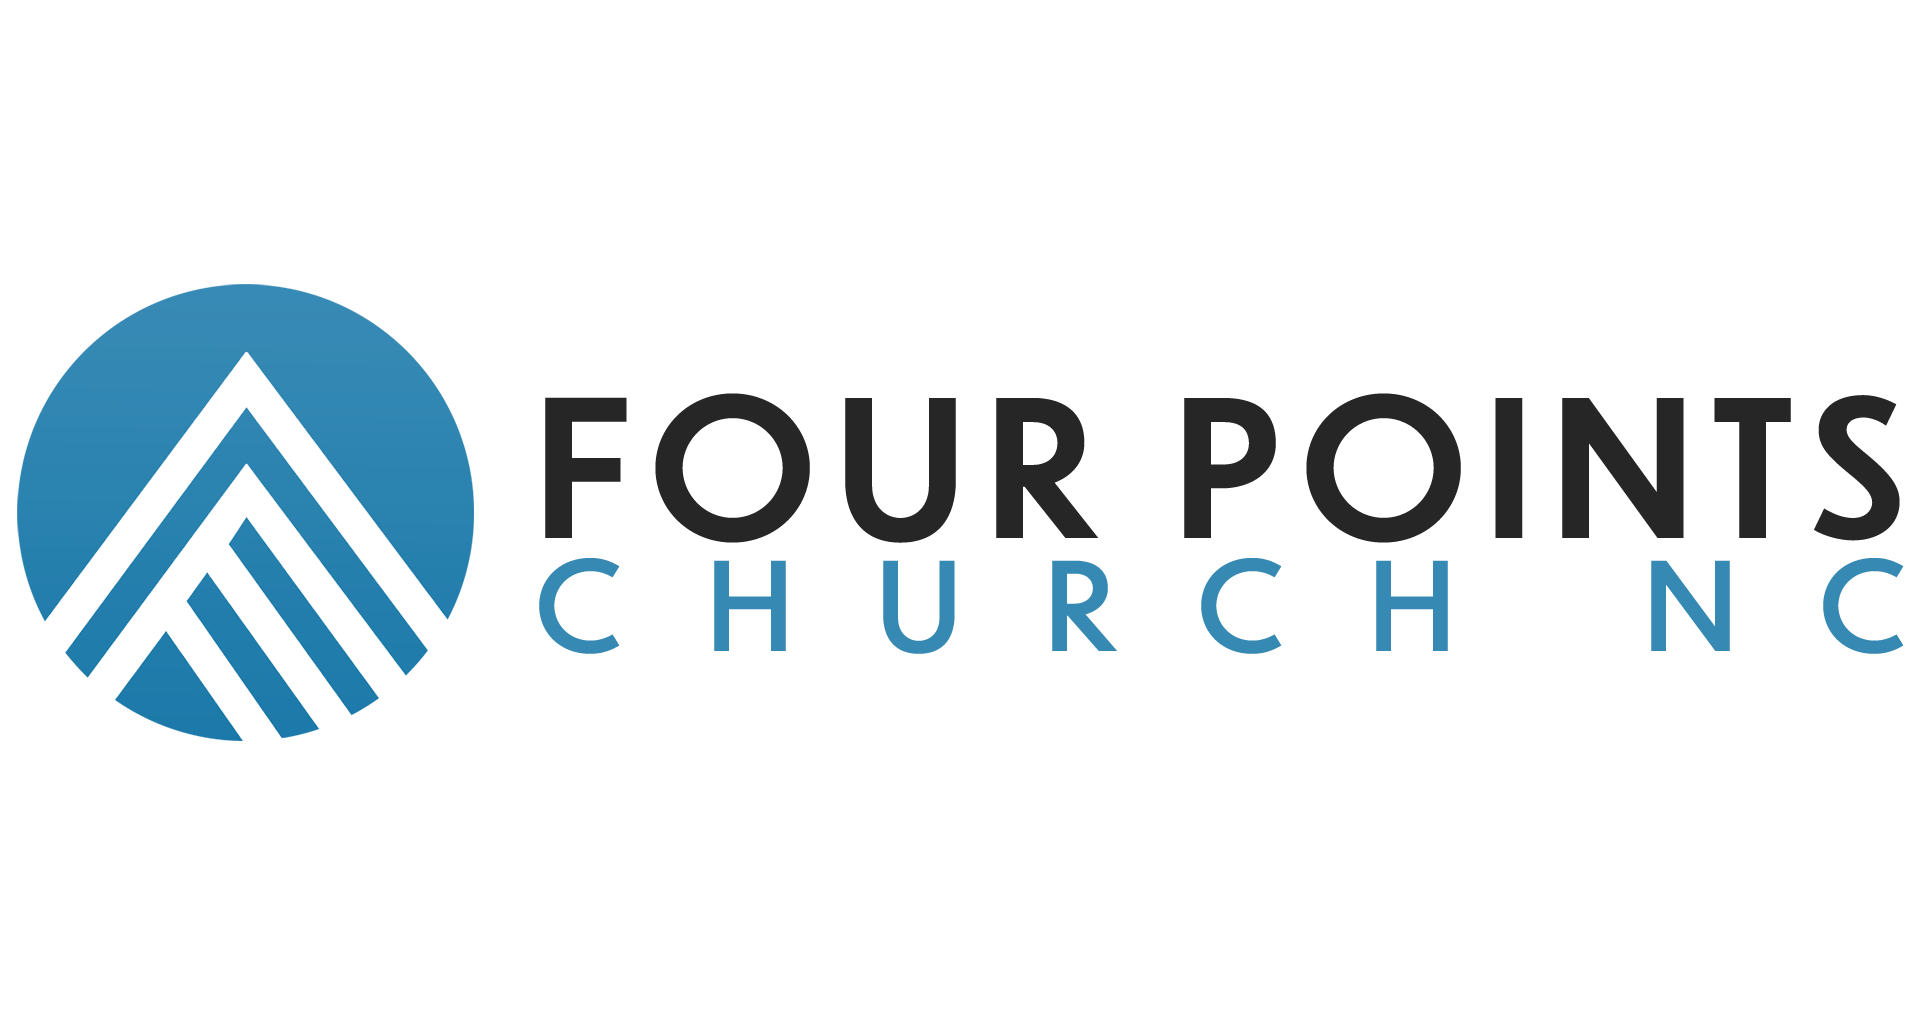 FOUR POINTS CHURCH NC